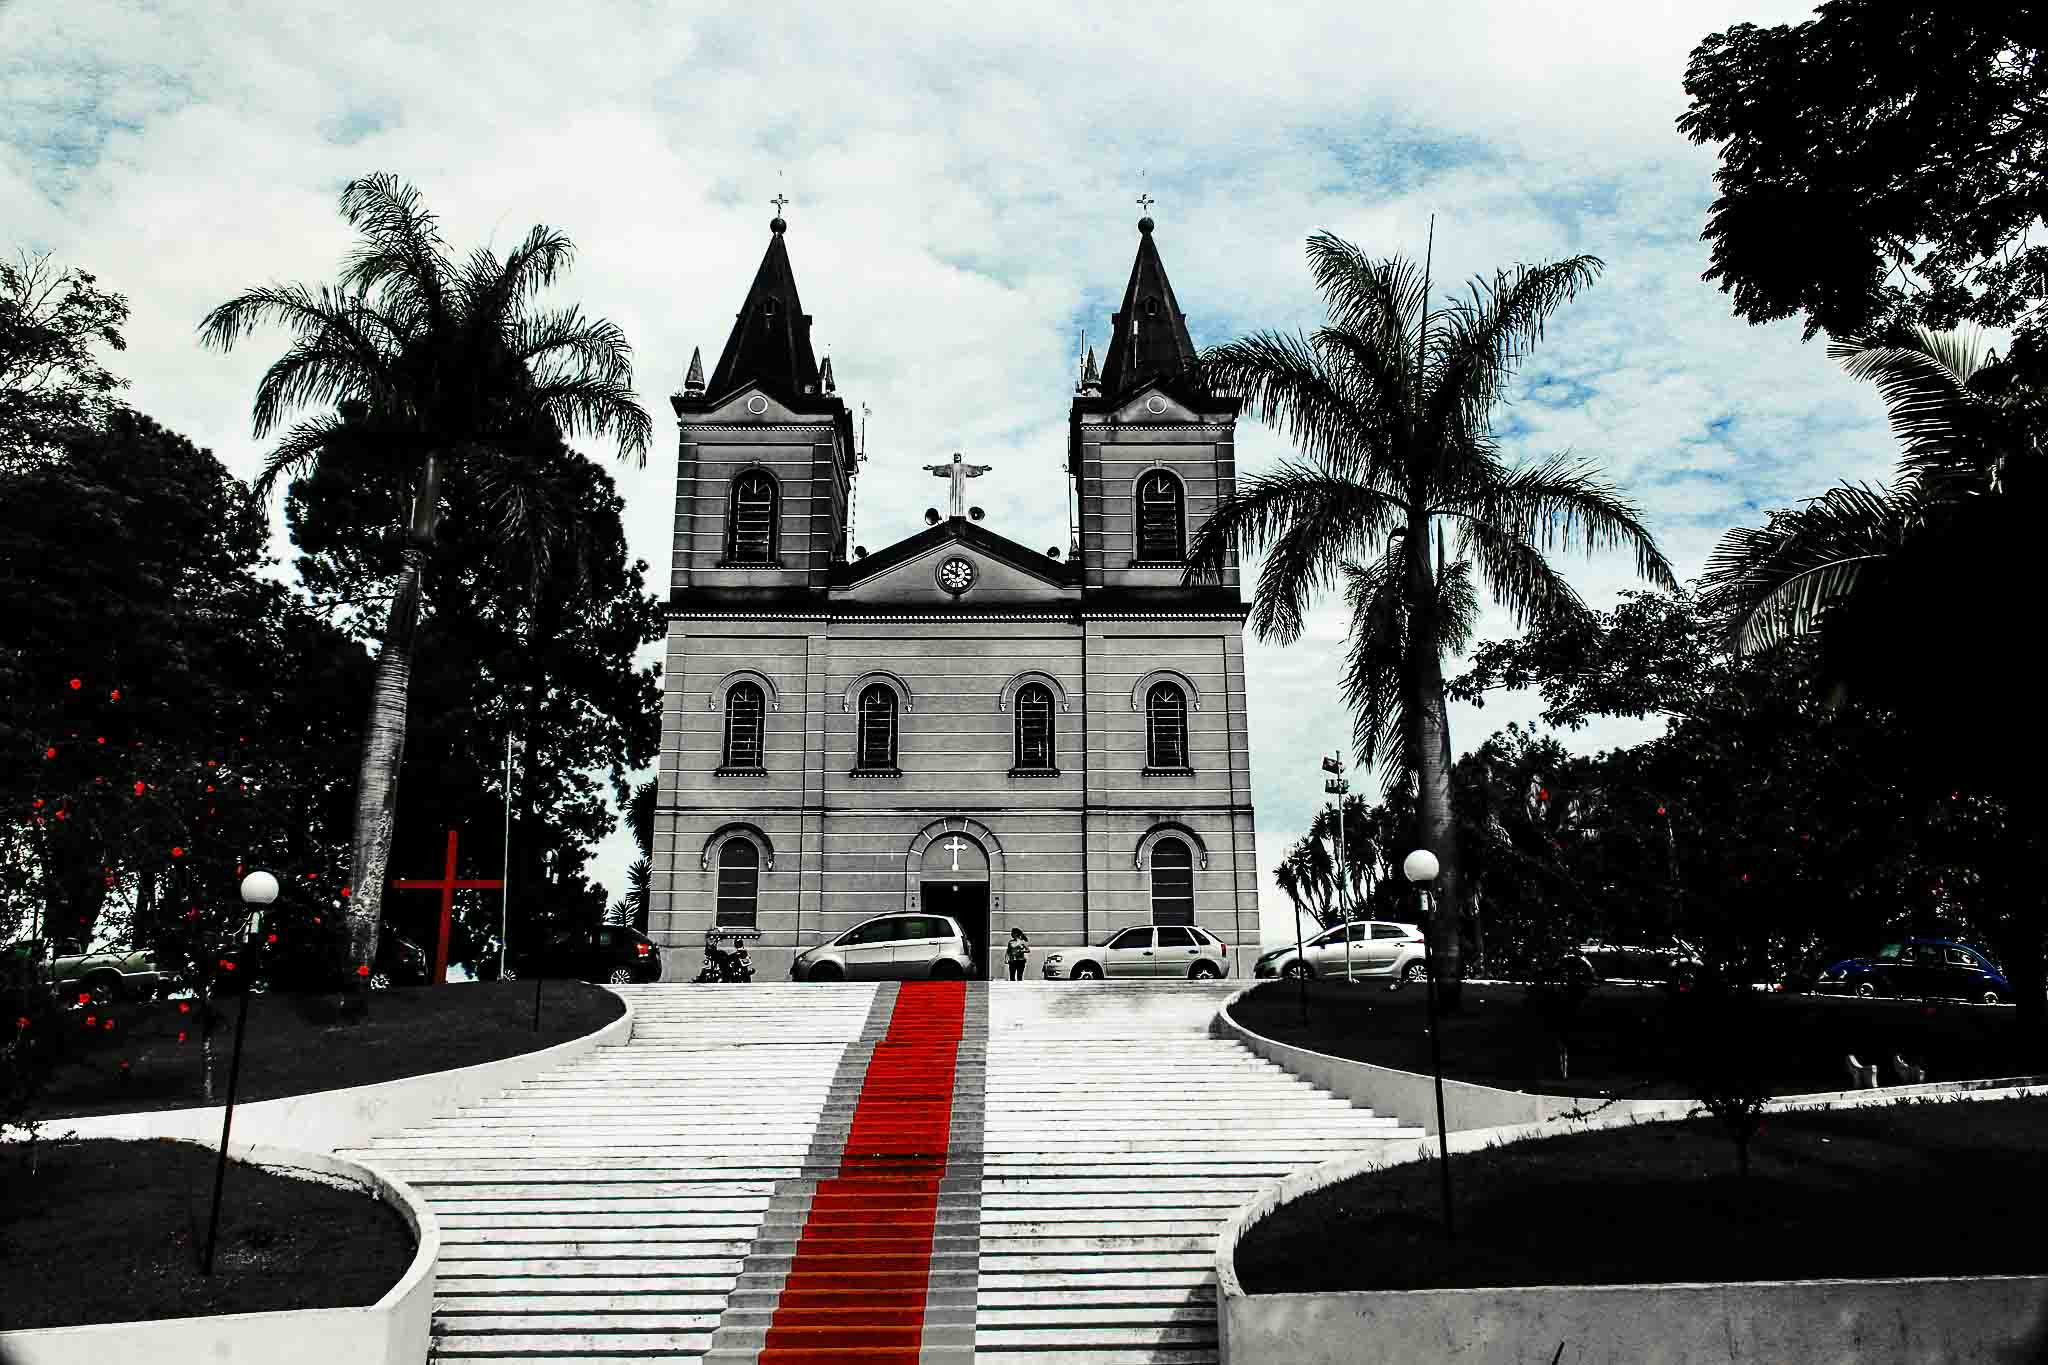 Canon EOS 70D sample photo. Igreja matriz de bueno brandão, minas gerais photography